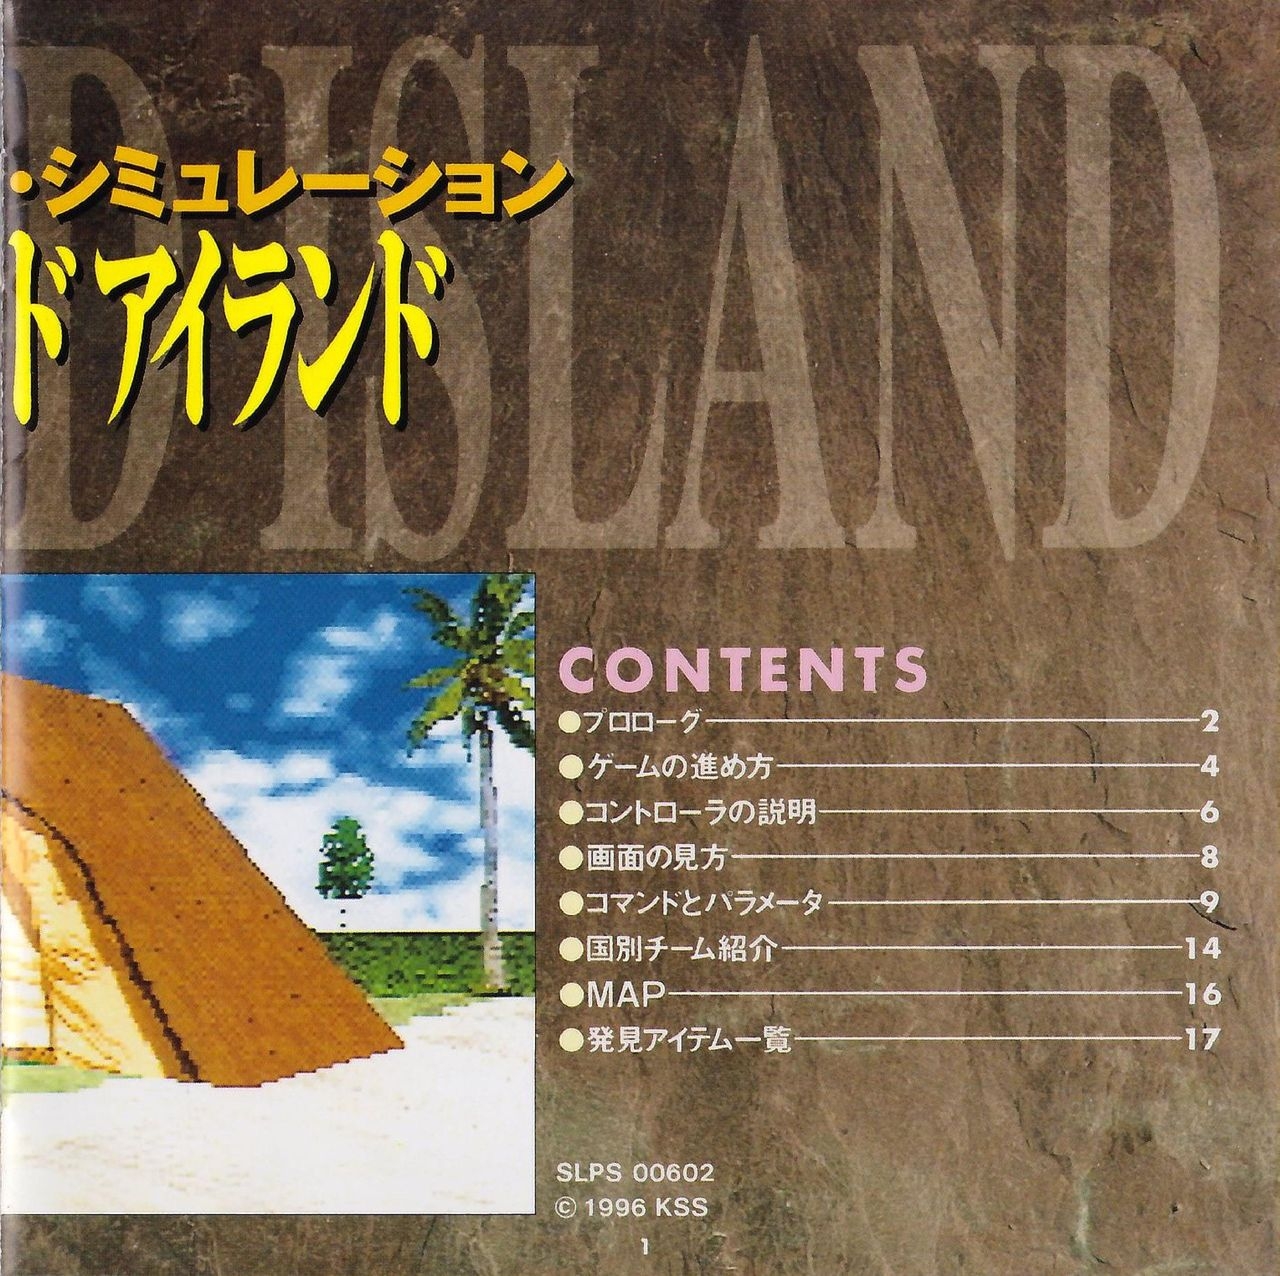 [KSS] Deserted Island - Manual 3